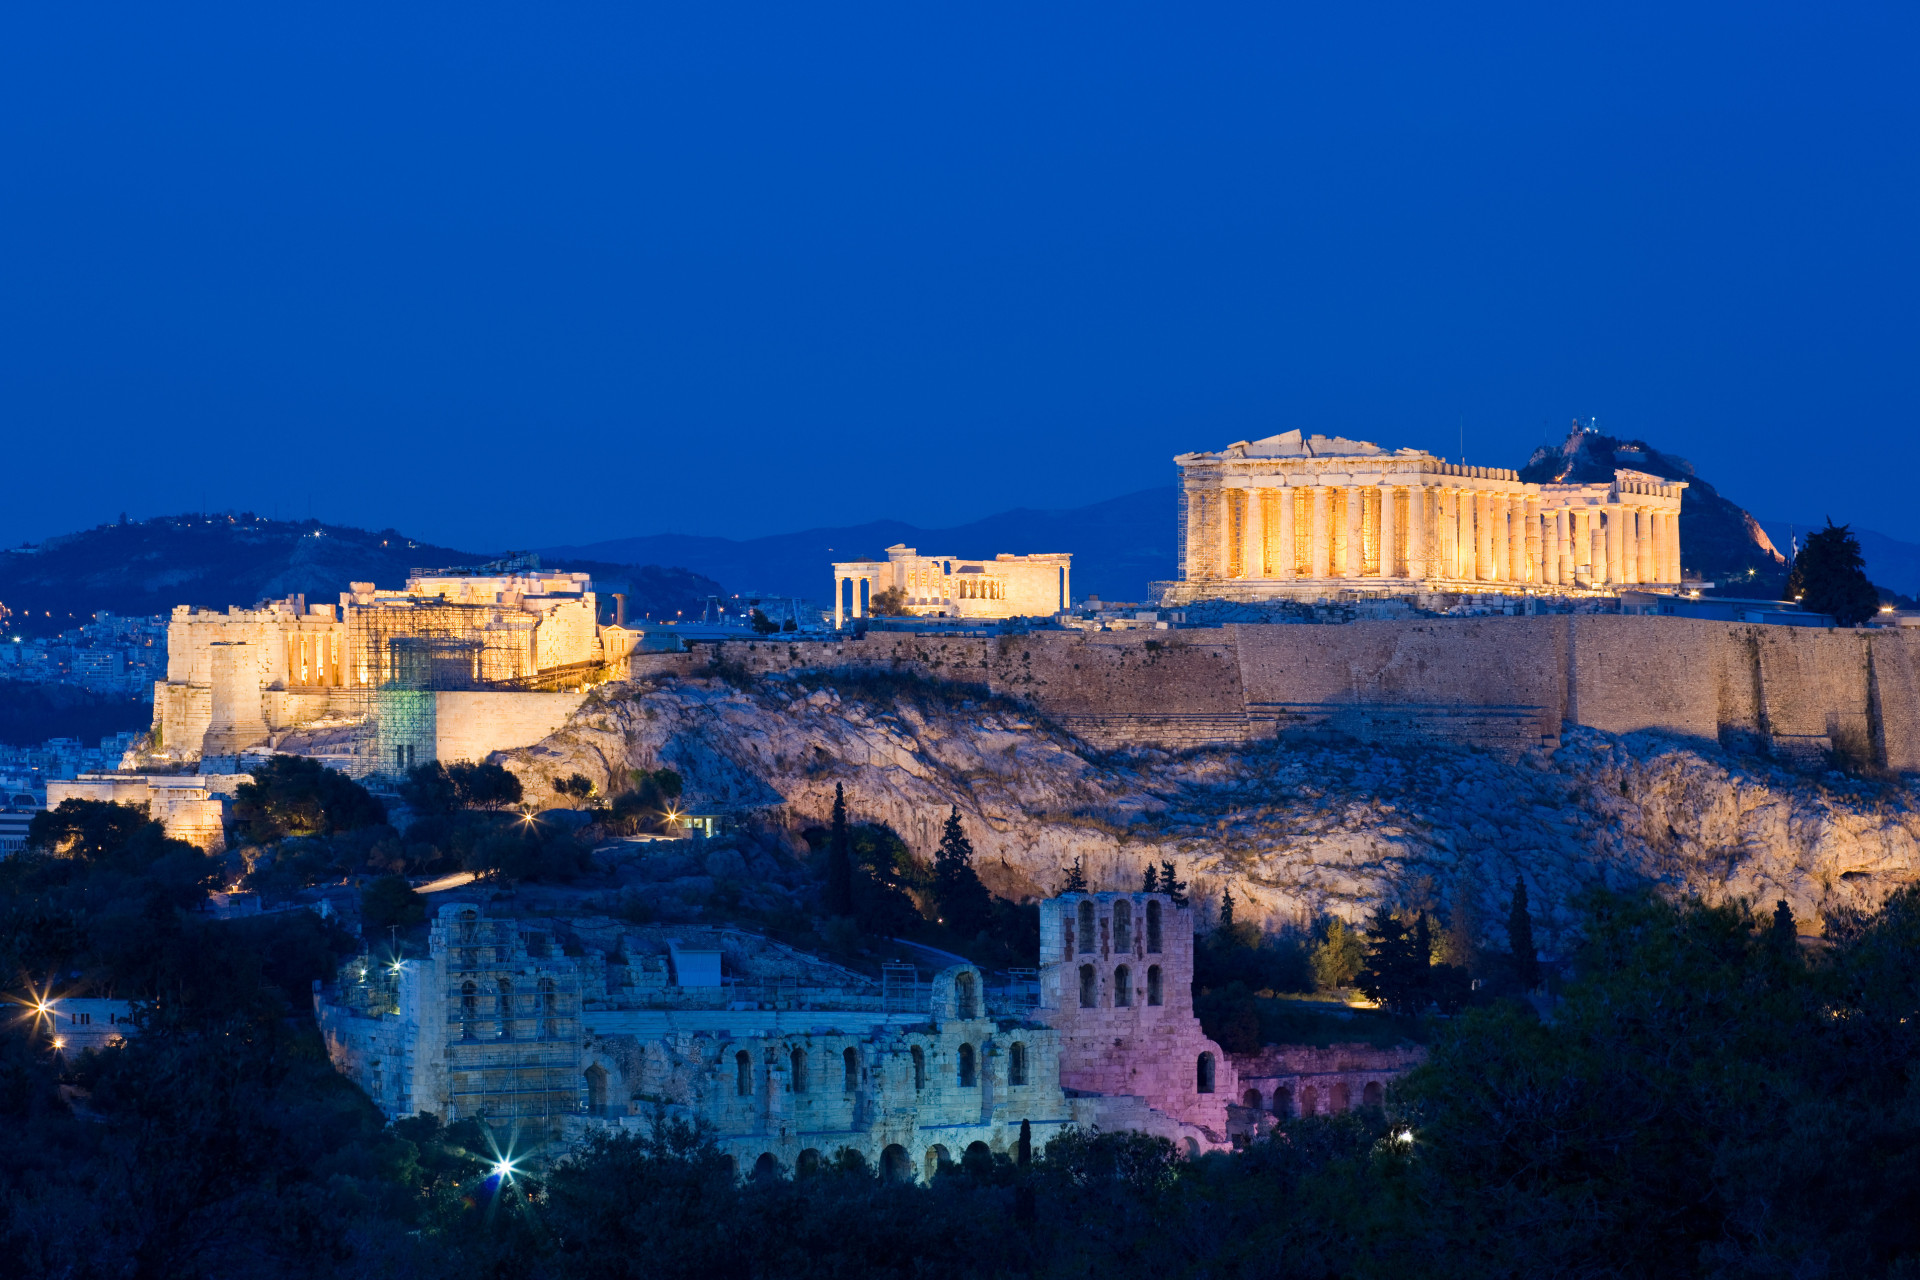 La capitale grecque, Athènes, fut érigée au temps de la Grèce antique.<p>Tu pourrais aussi aimer:<a href="https://www.starsinsider.com/n/240318?utm_source=msn.com&utm_medium=display&utm_campaign=referral_description&utm_content=192090v2"> Bannies! Ces célébrités ne sont pas bienvenues à l'étranger...</a></p>